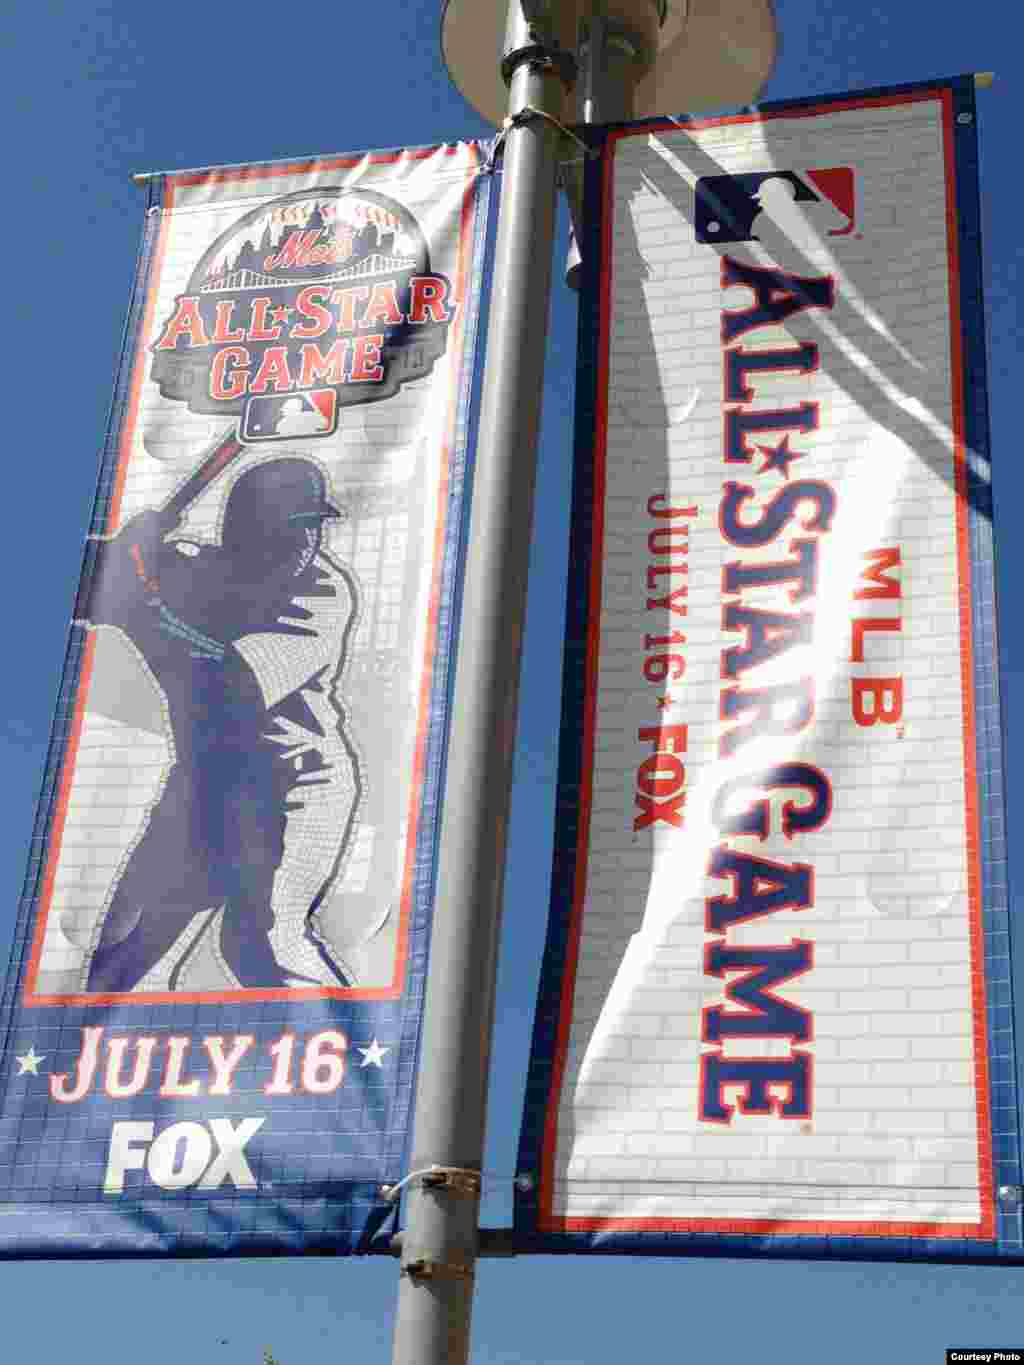 El Derby de jonrones tendrá lugar el 15 de julio en el hogar de los Mets de New York.